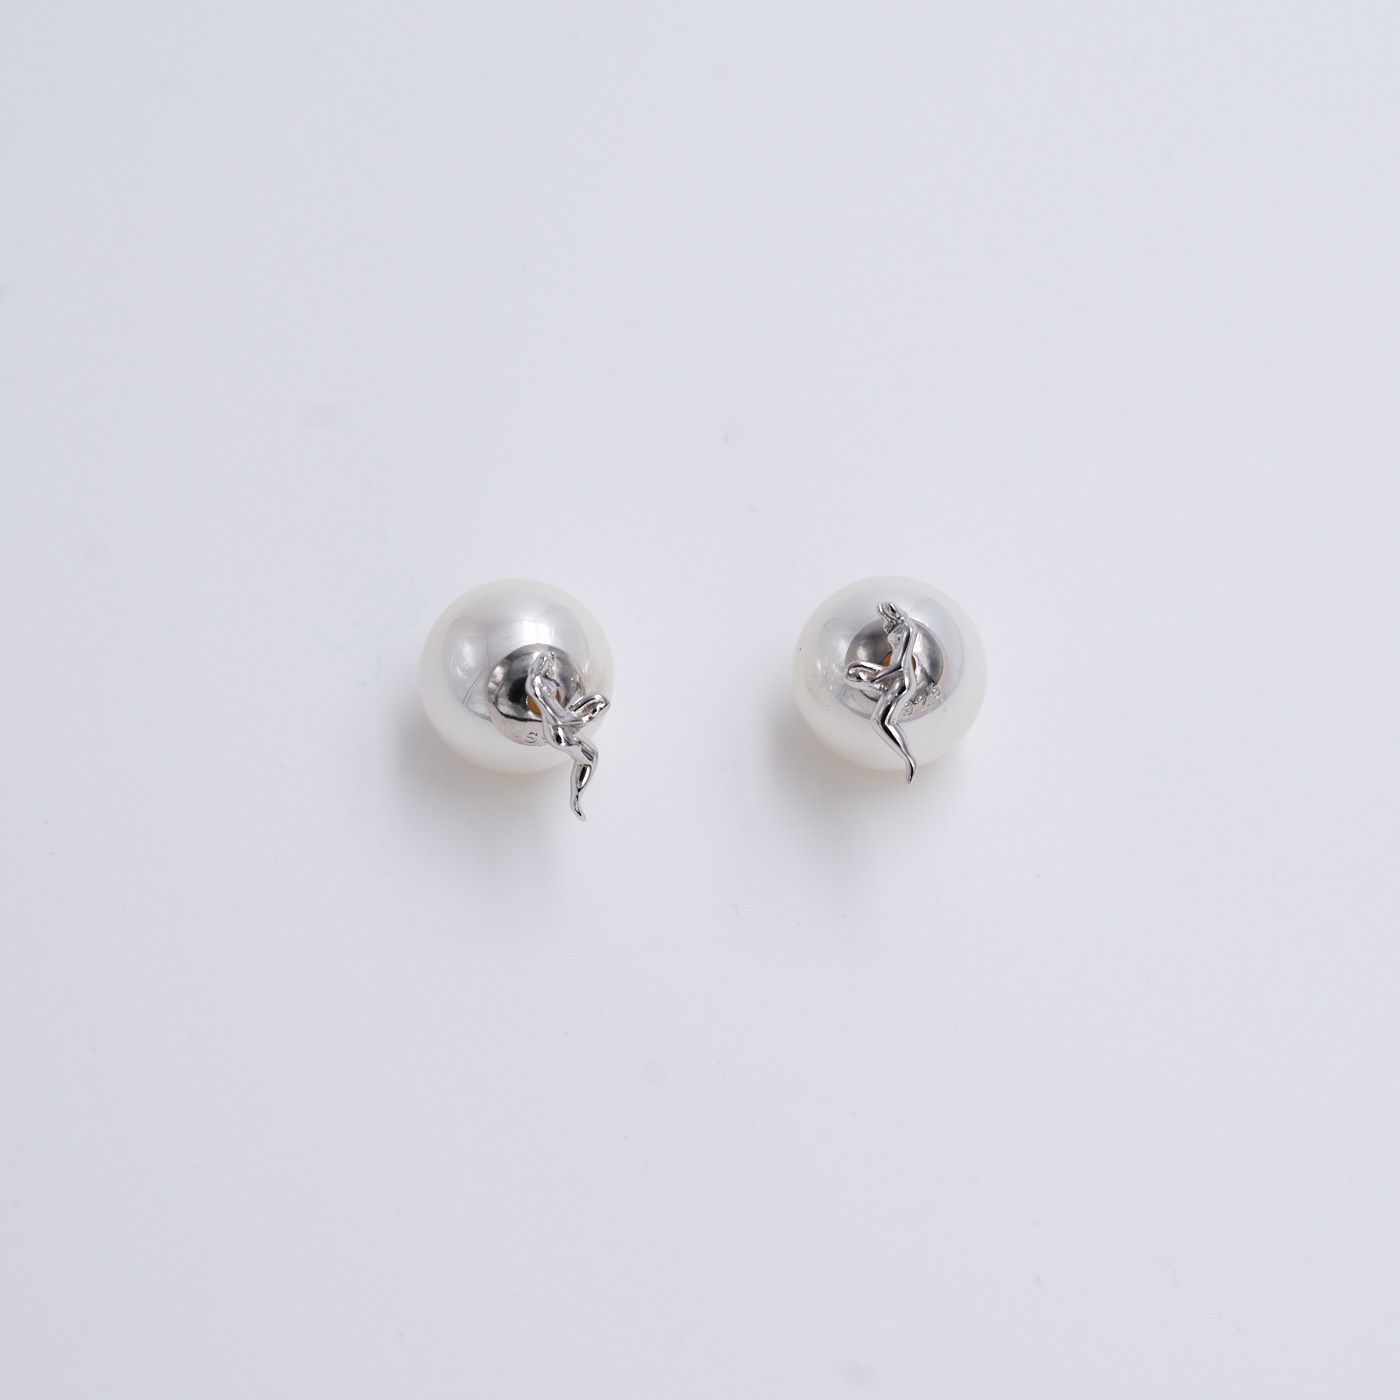 常玉藝術珠寶系列-美姿珍珠耳環